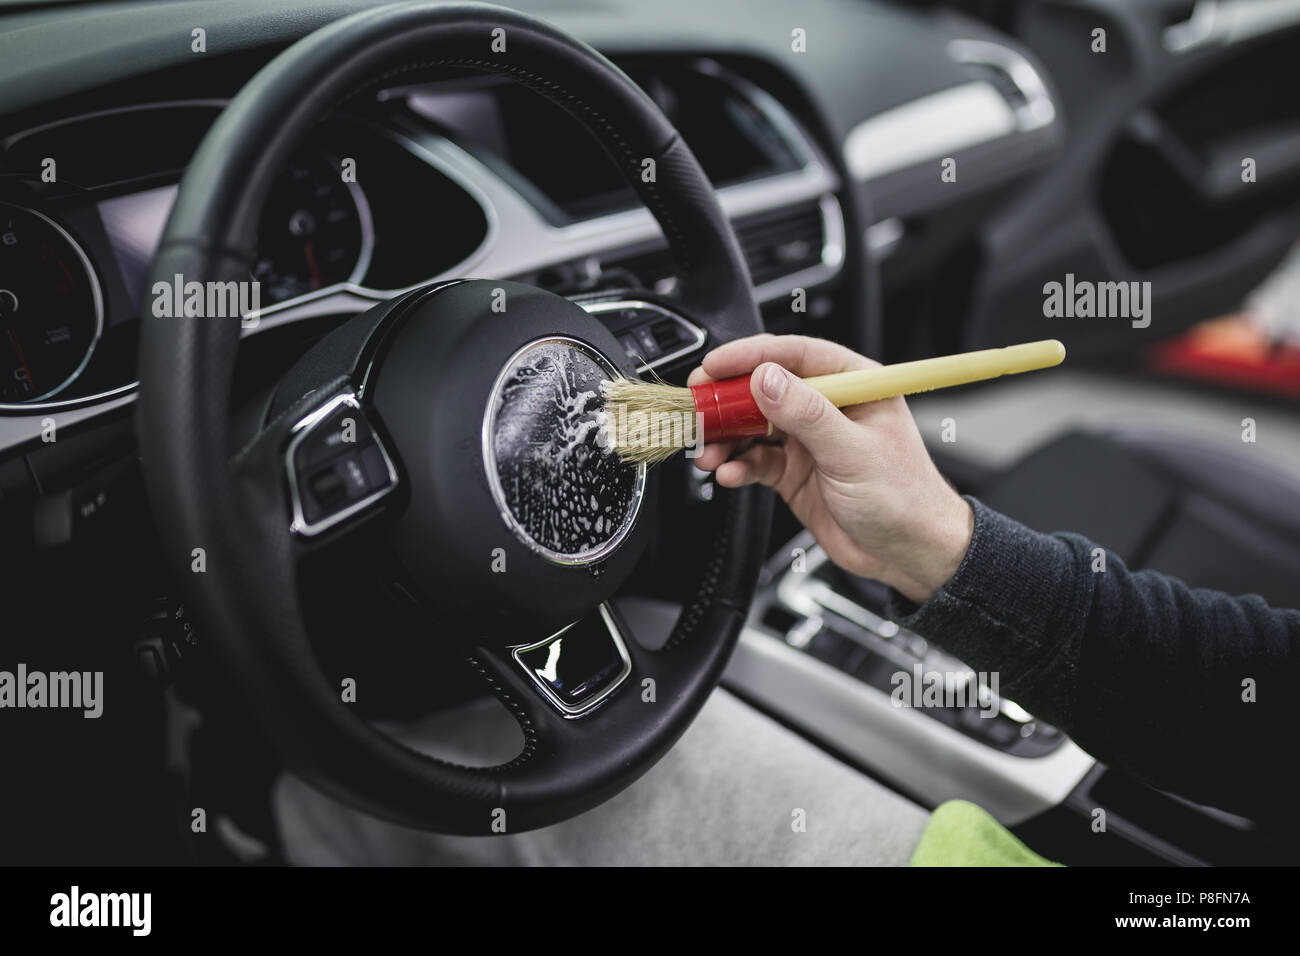 Ein Mann Reinigung Auto Innenraum, Autoteilen (oder Aufbereitung) Konzept  Stockfotografie - Alamy